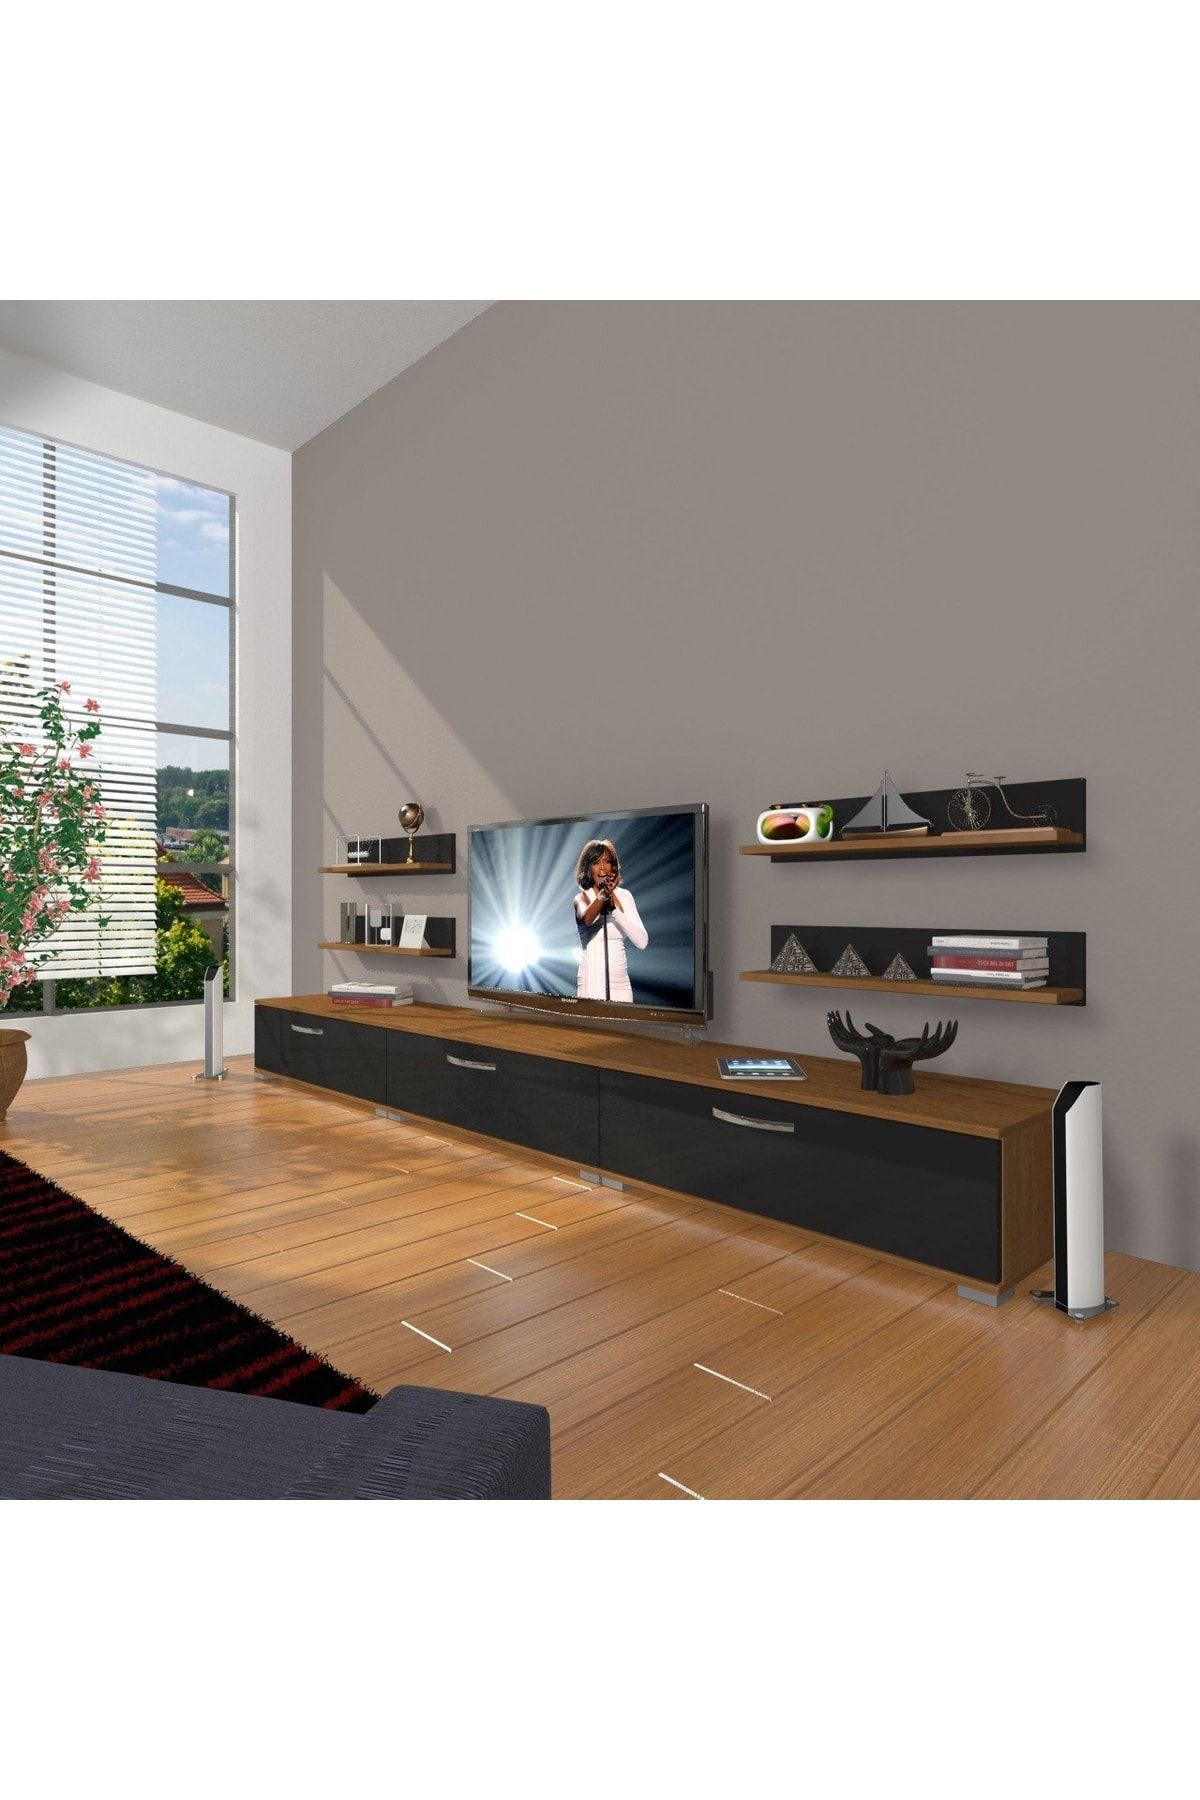 Decoraktiv Eko 270r Slm Tv Ünitesi Tv Sehpası - Ceviz - Siyah